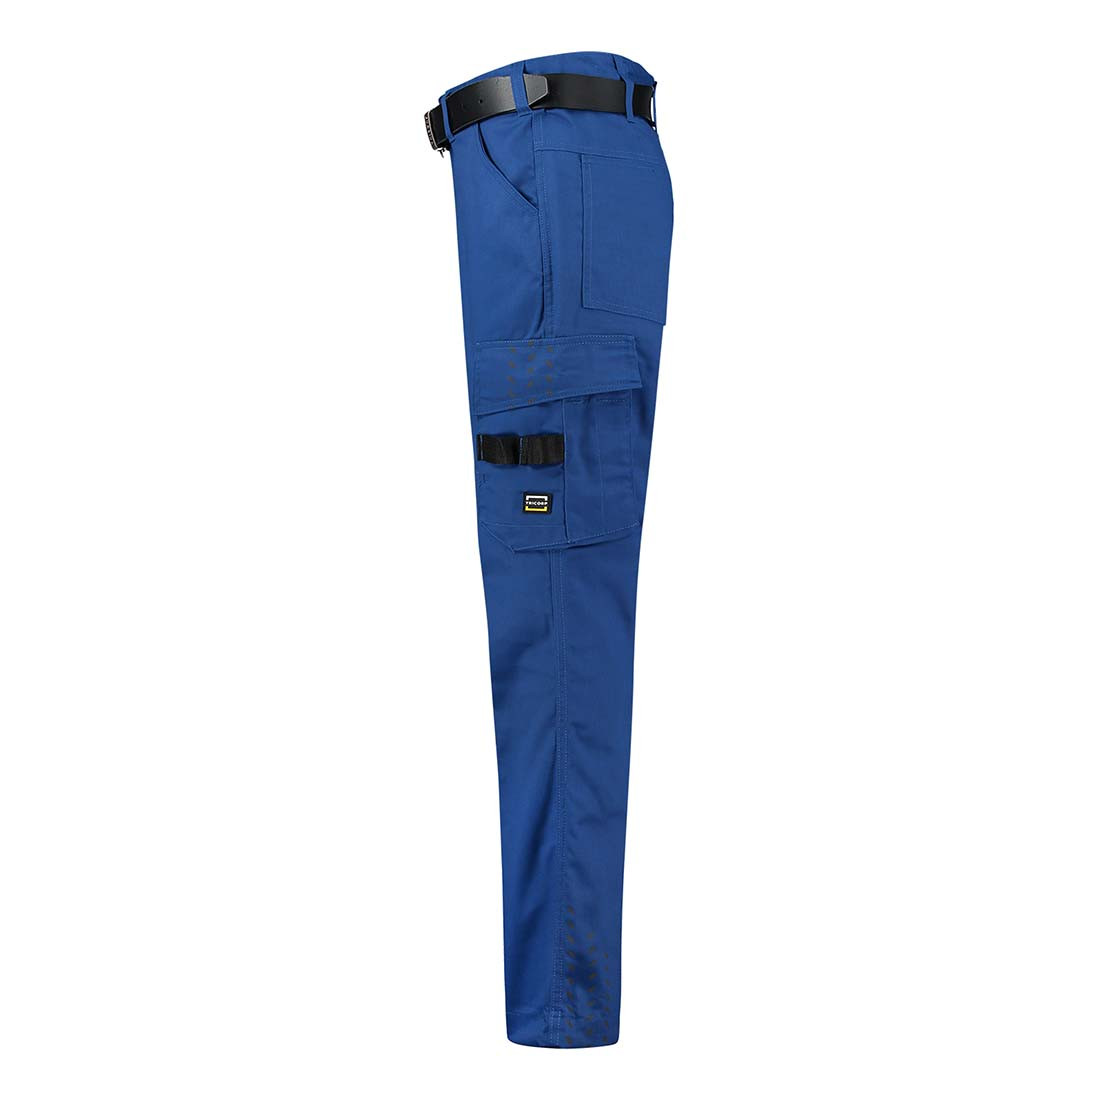 Pantalon de travail pour femme - Les vêtements de protection